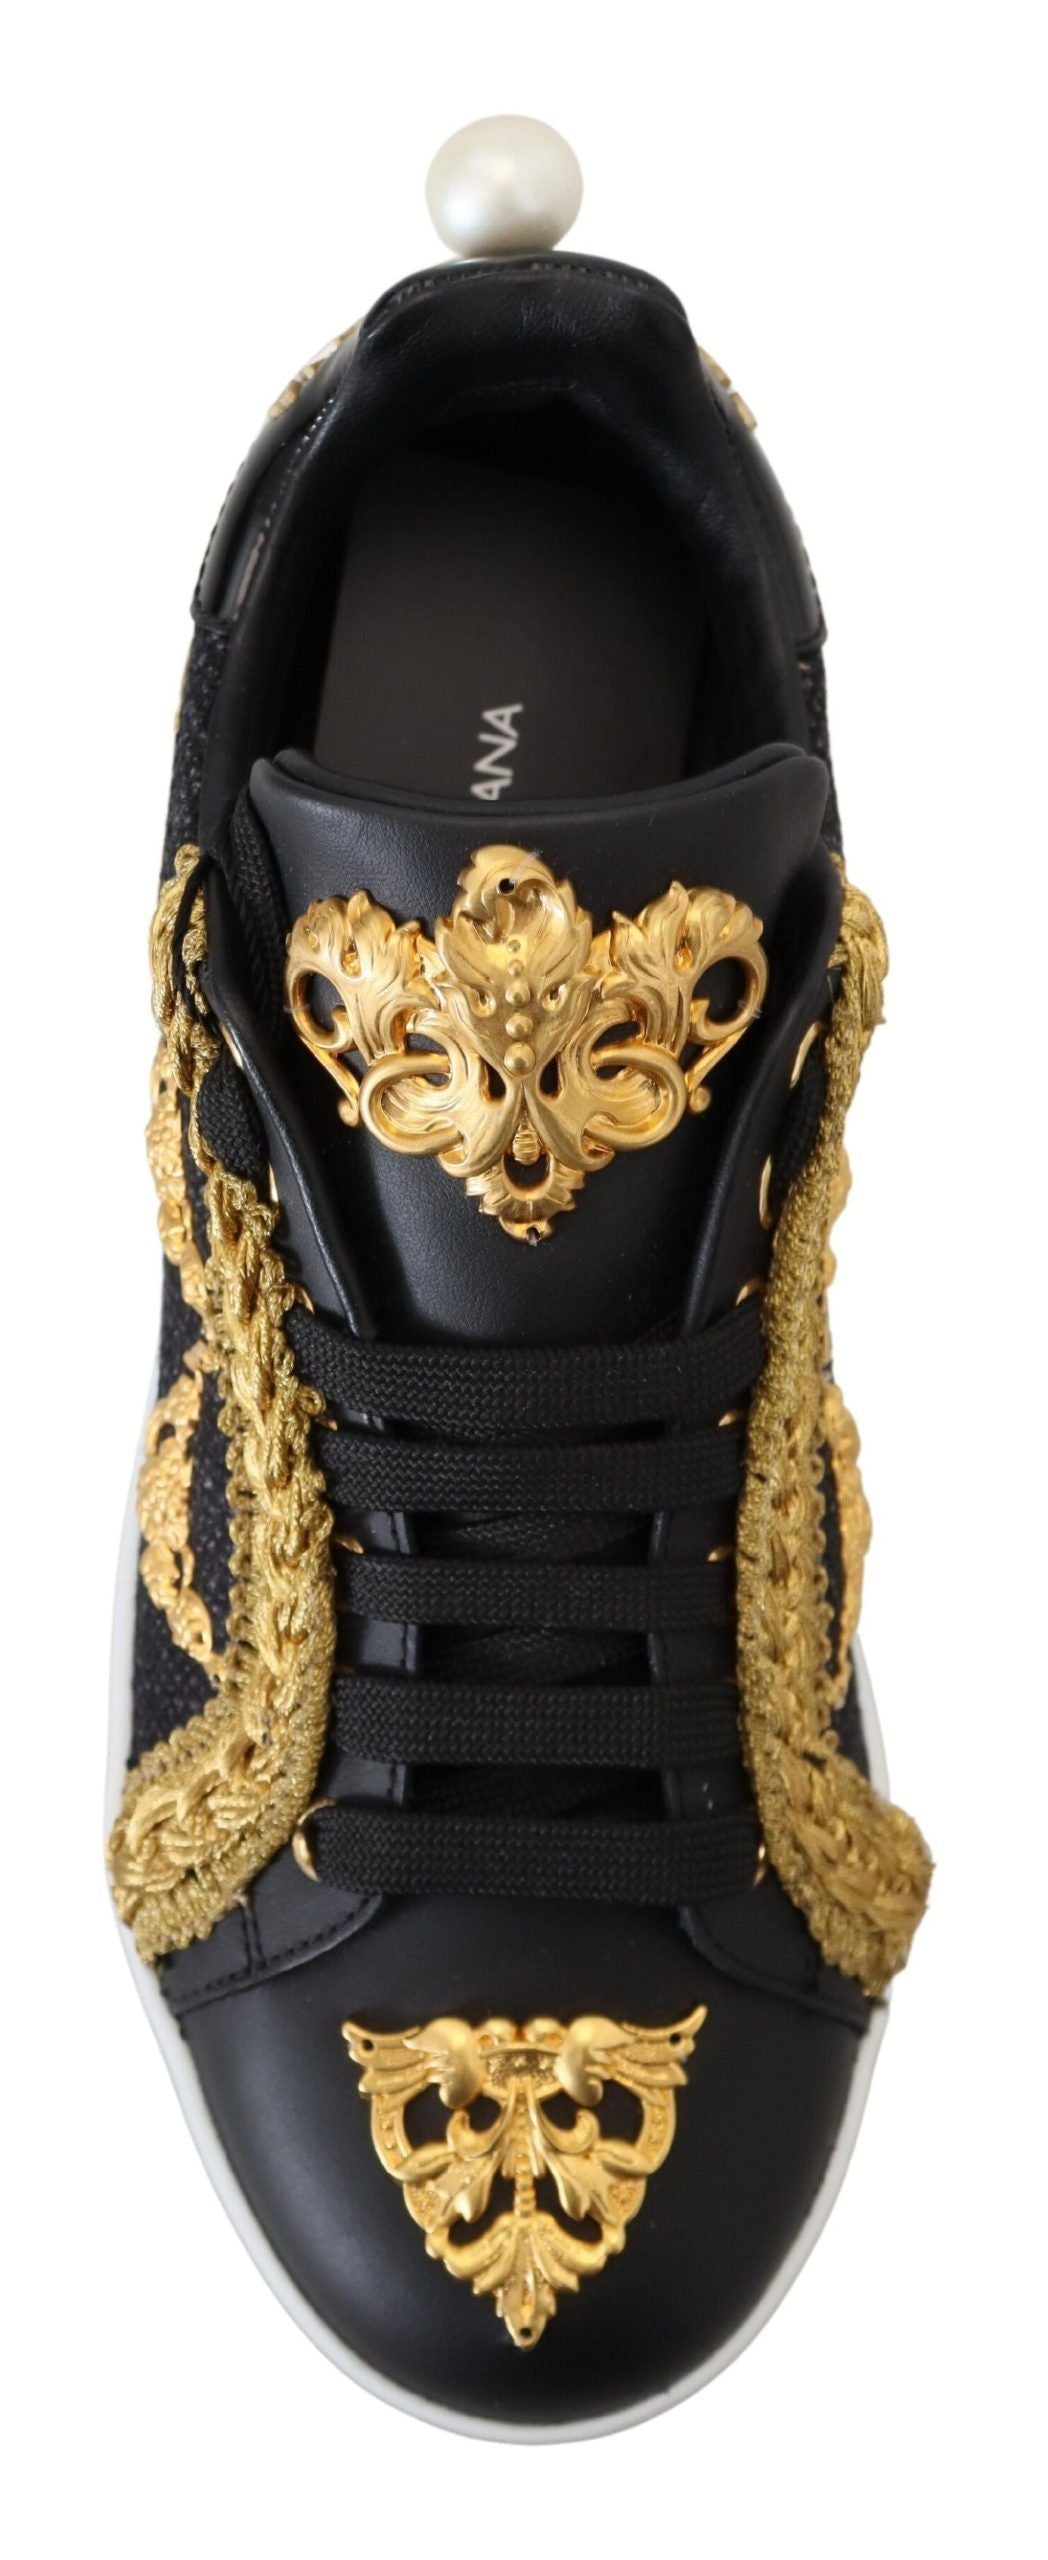 Dolce & Gabbana Elegant Portofino Leather Sneakers in Black